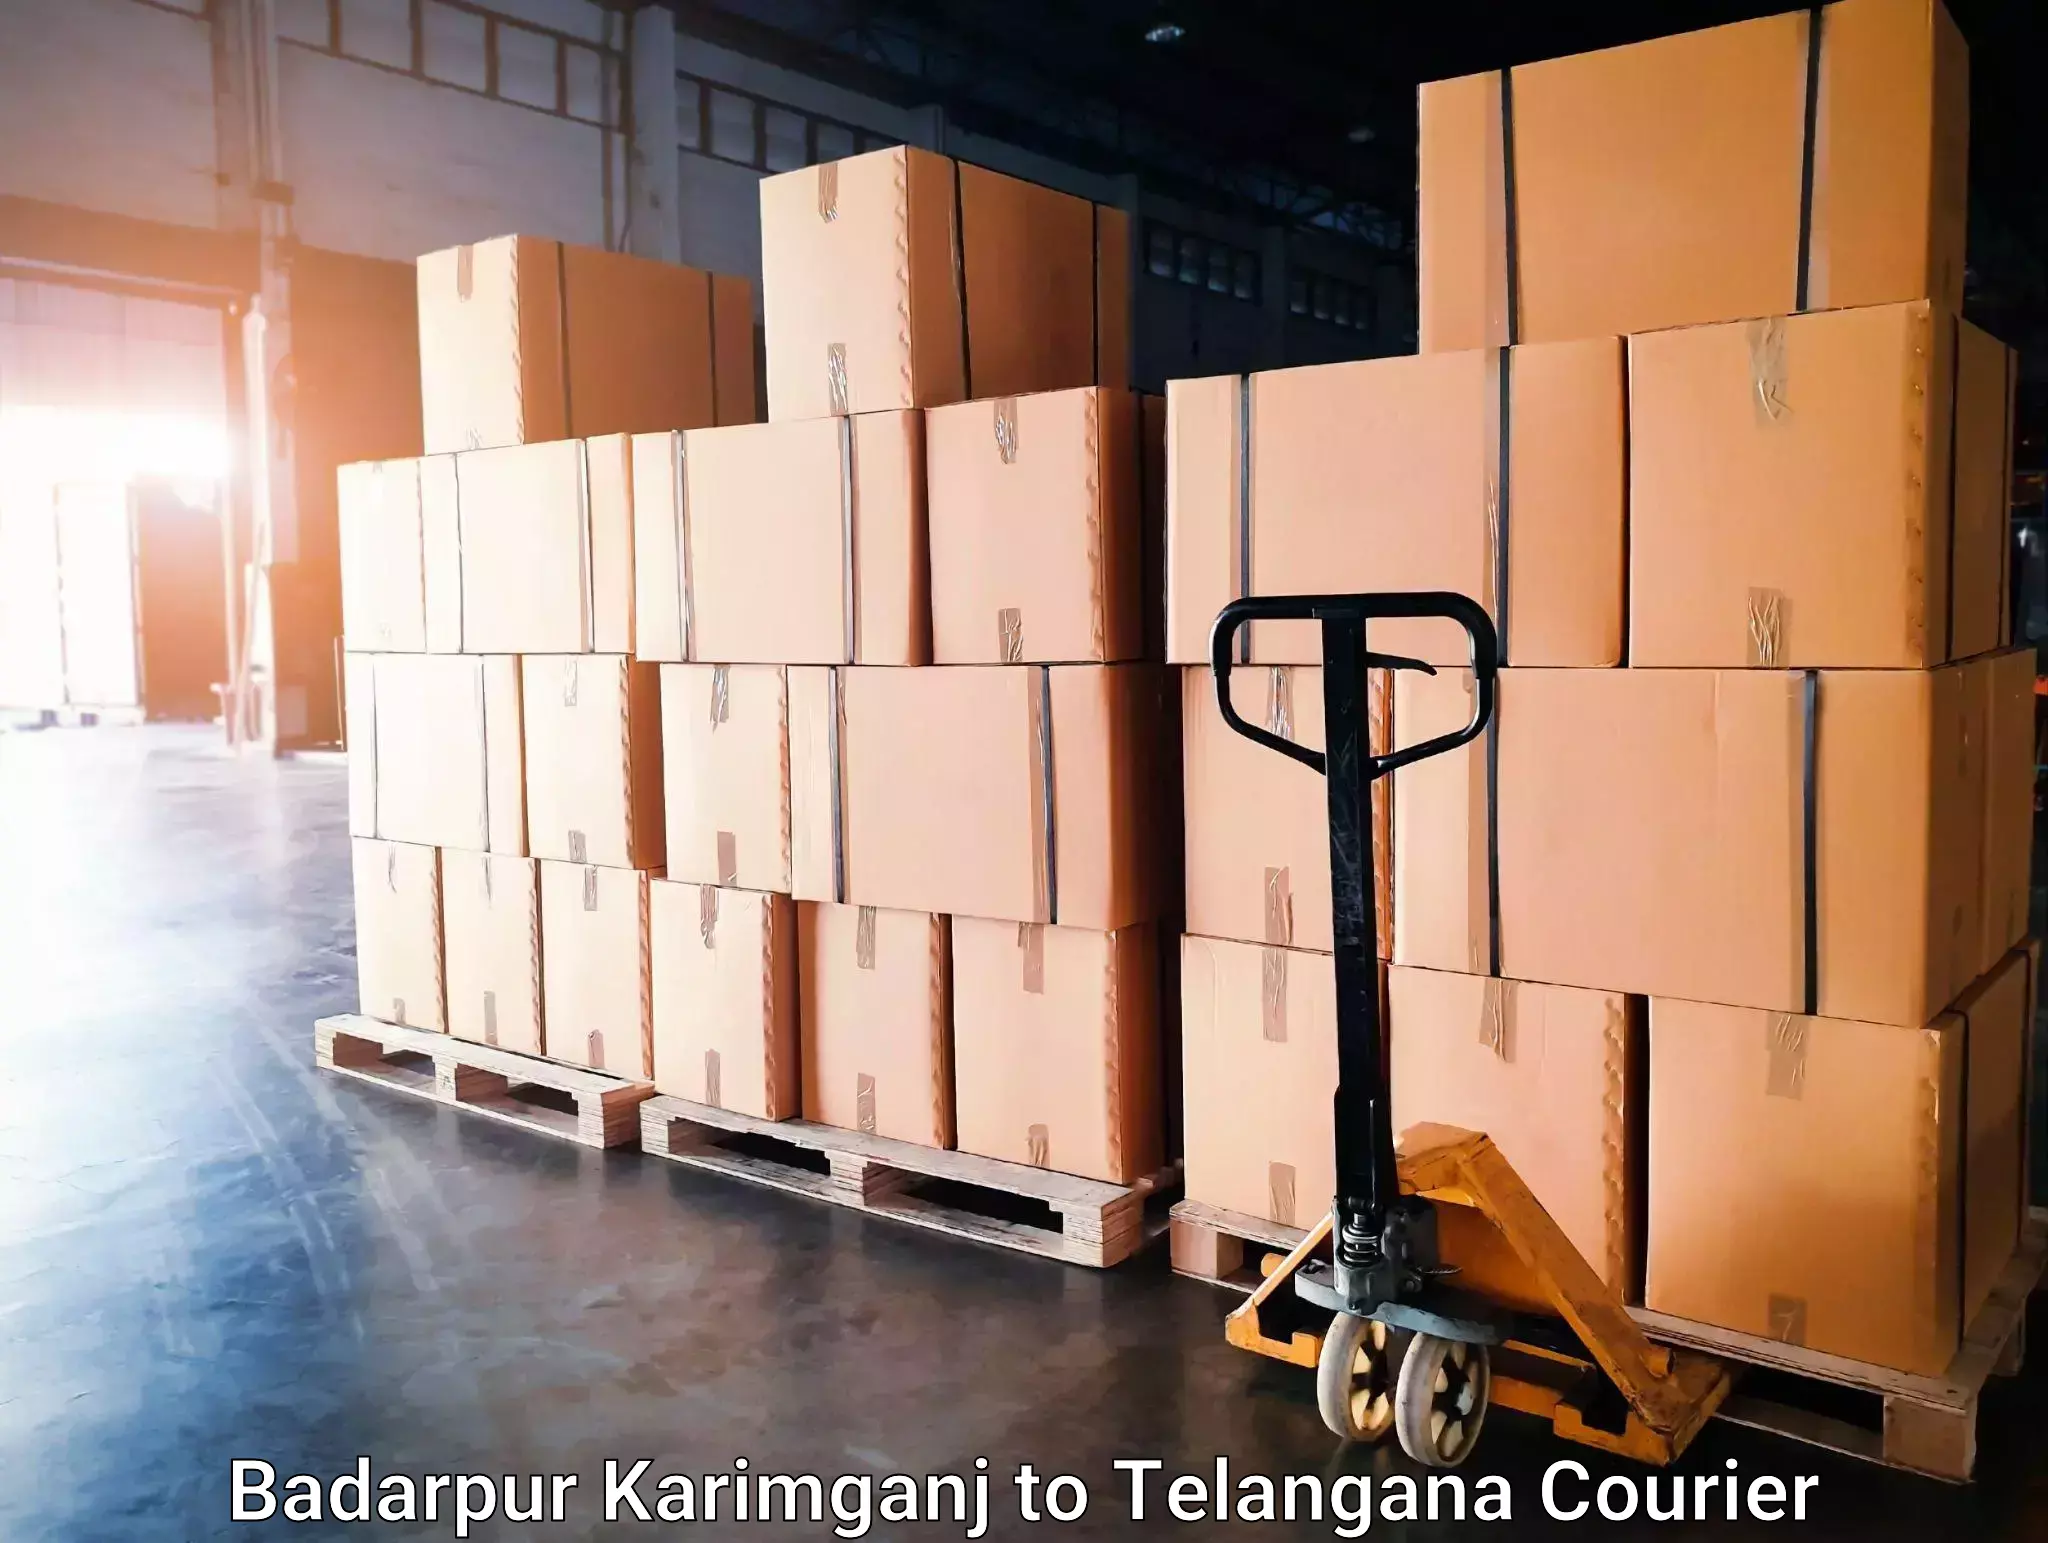 Urgent courier needs in Badarpur Karimganj to Kodad